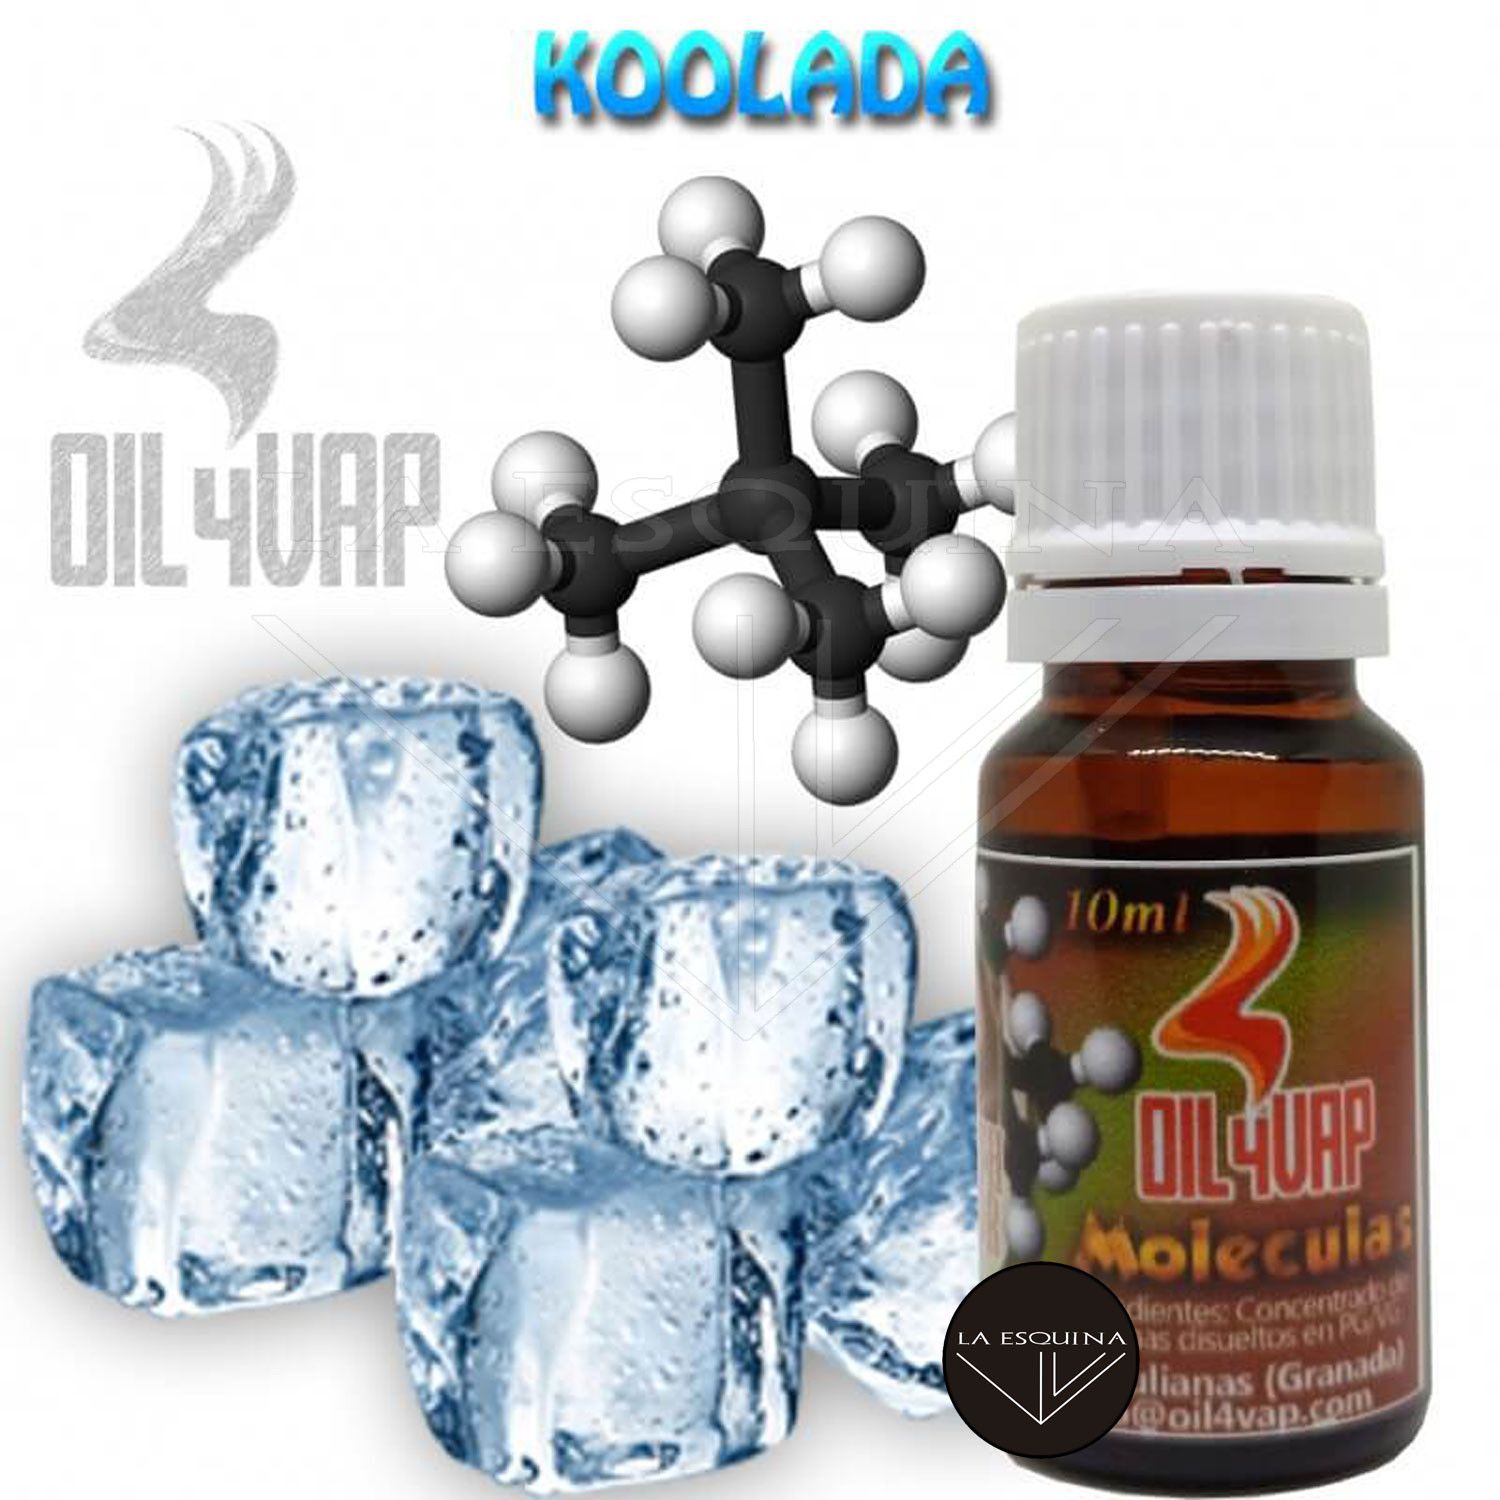 Molécula OIL4VAP Koolada 10ml